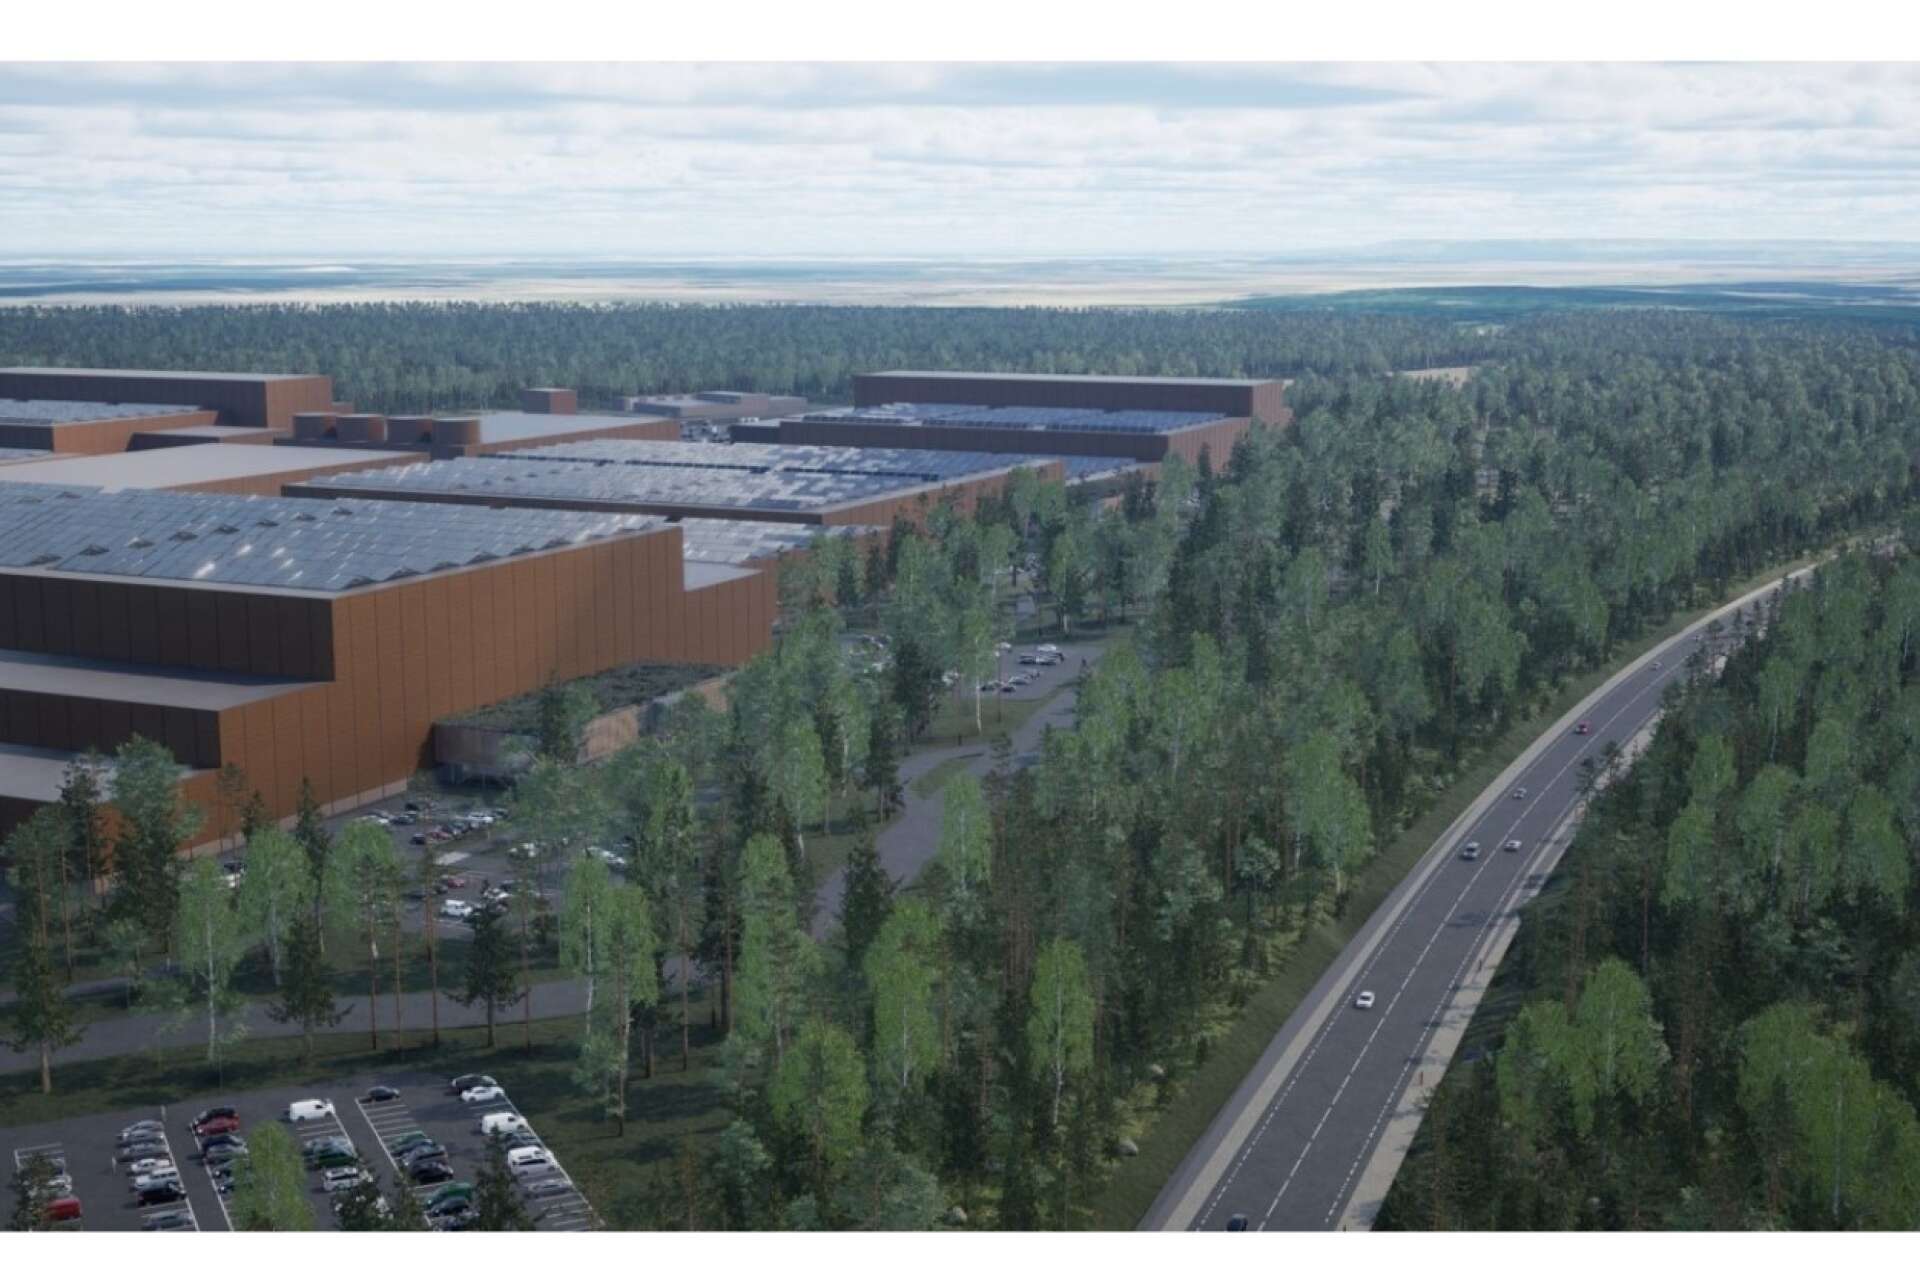 Volvo battery Mariestad operation ska bygga en battericellsfabrik. Illustrationen visar hur fabriken kan komma att se ut. Foto: Volvo BMO/Linn Malmén